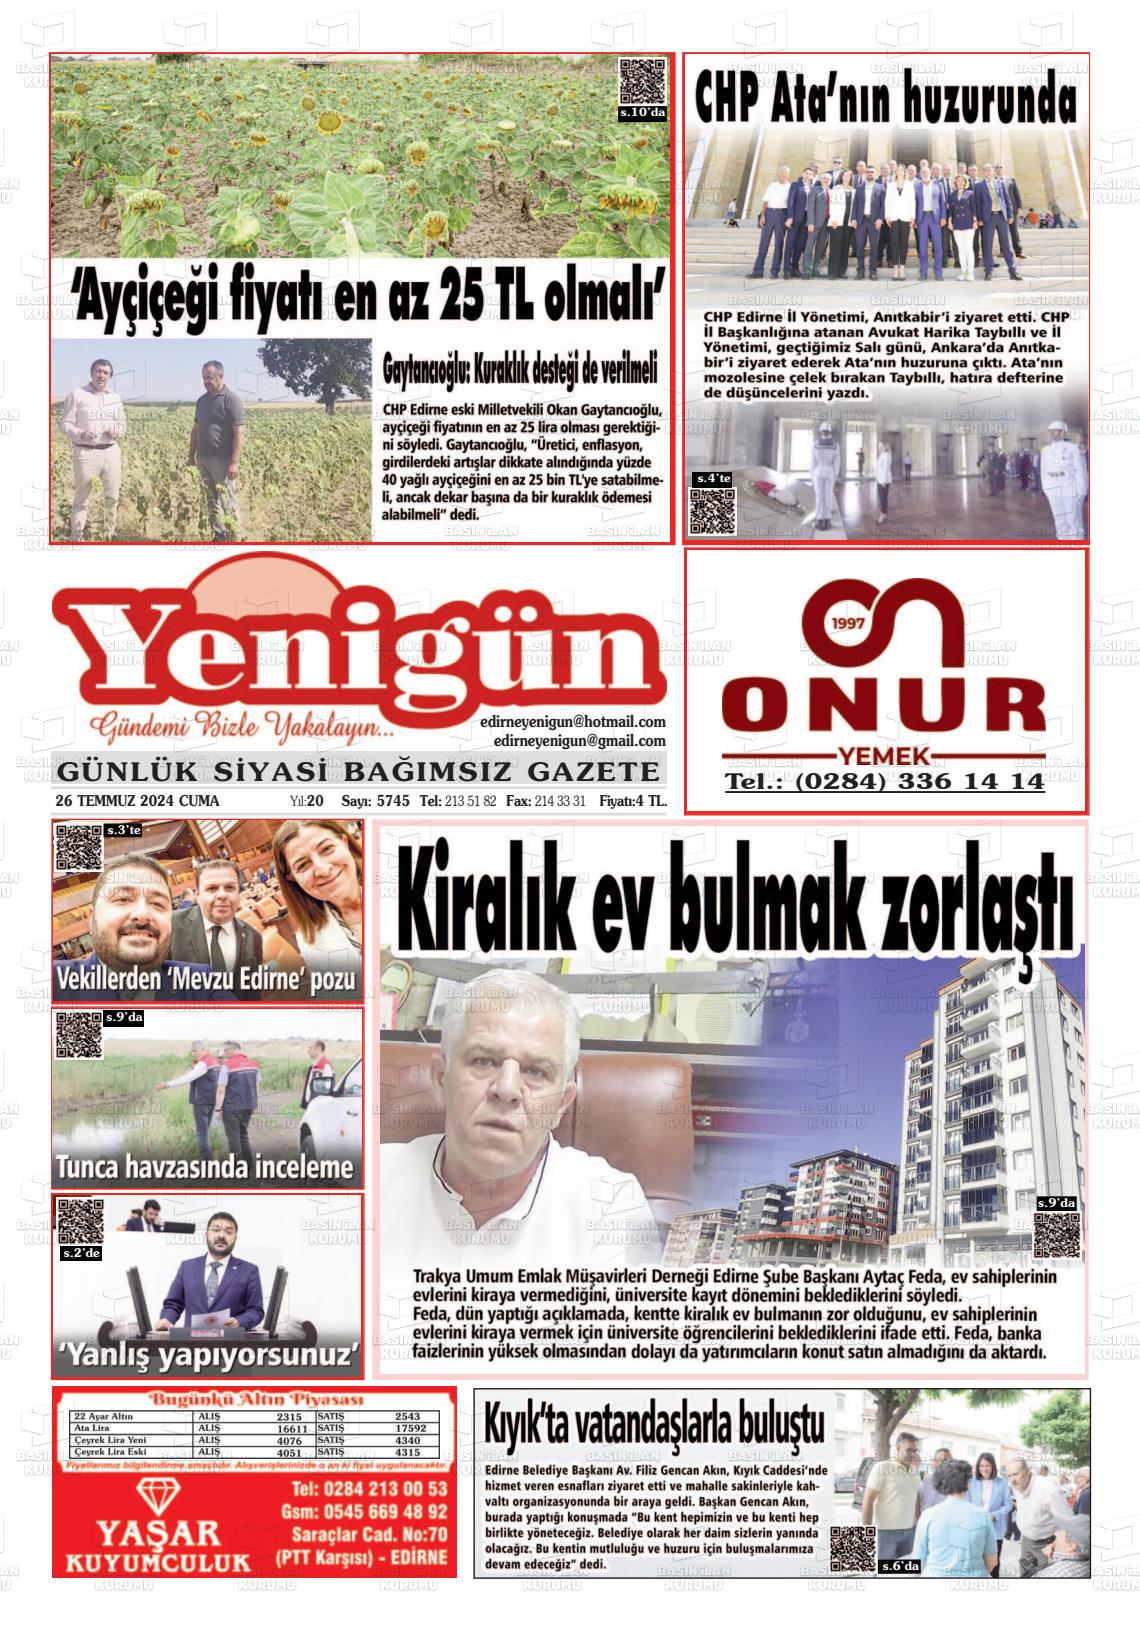 27 Temmuz 2024 Edirne Yenigün Gazete Manşeti